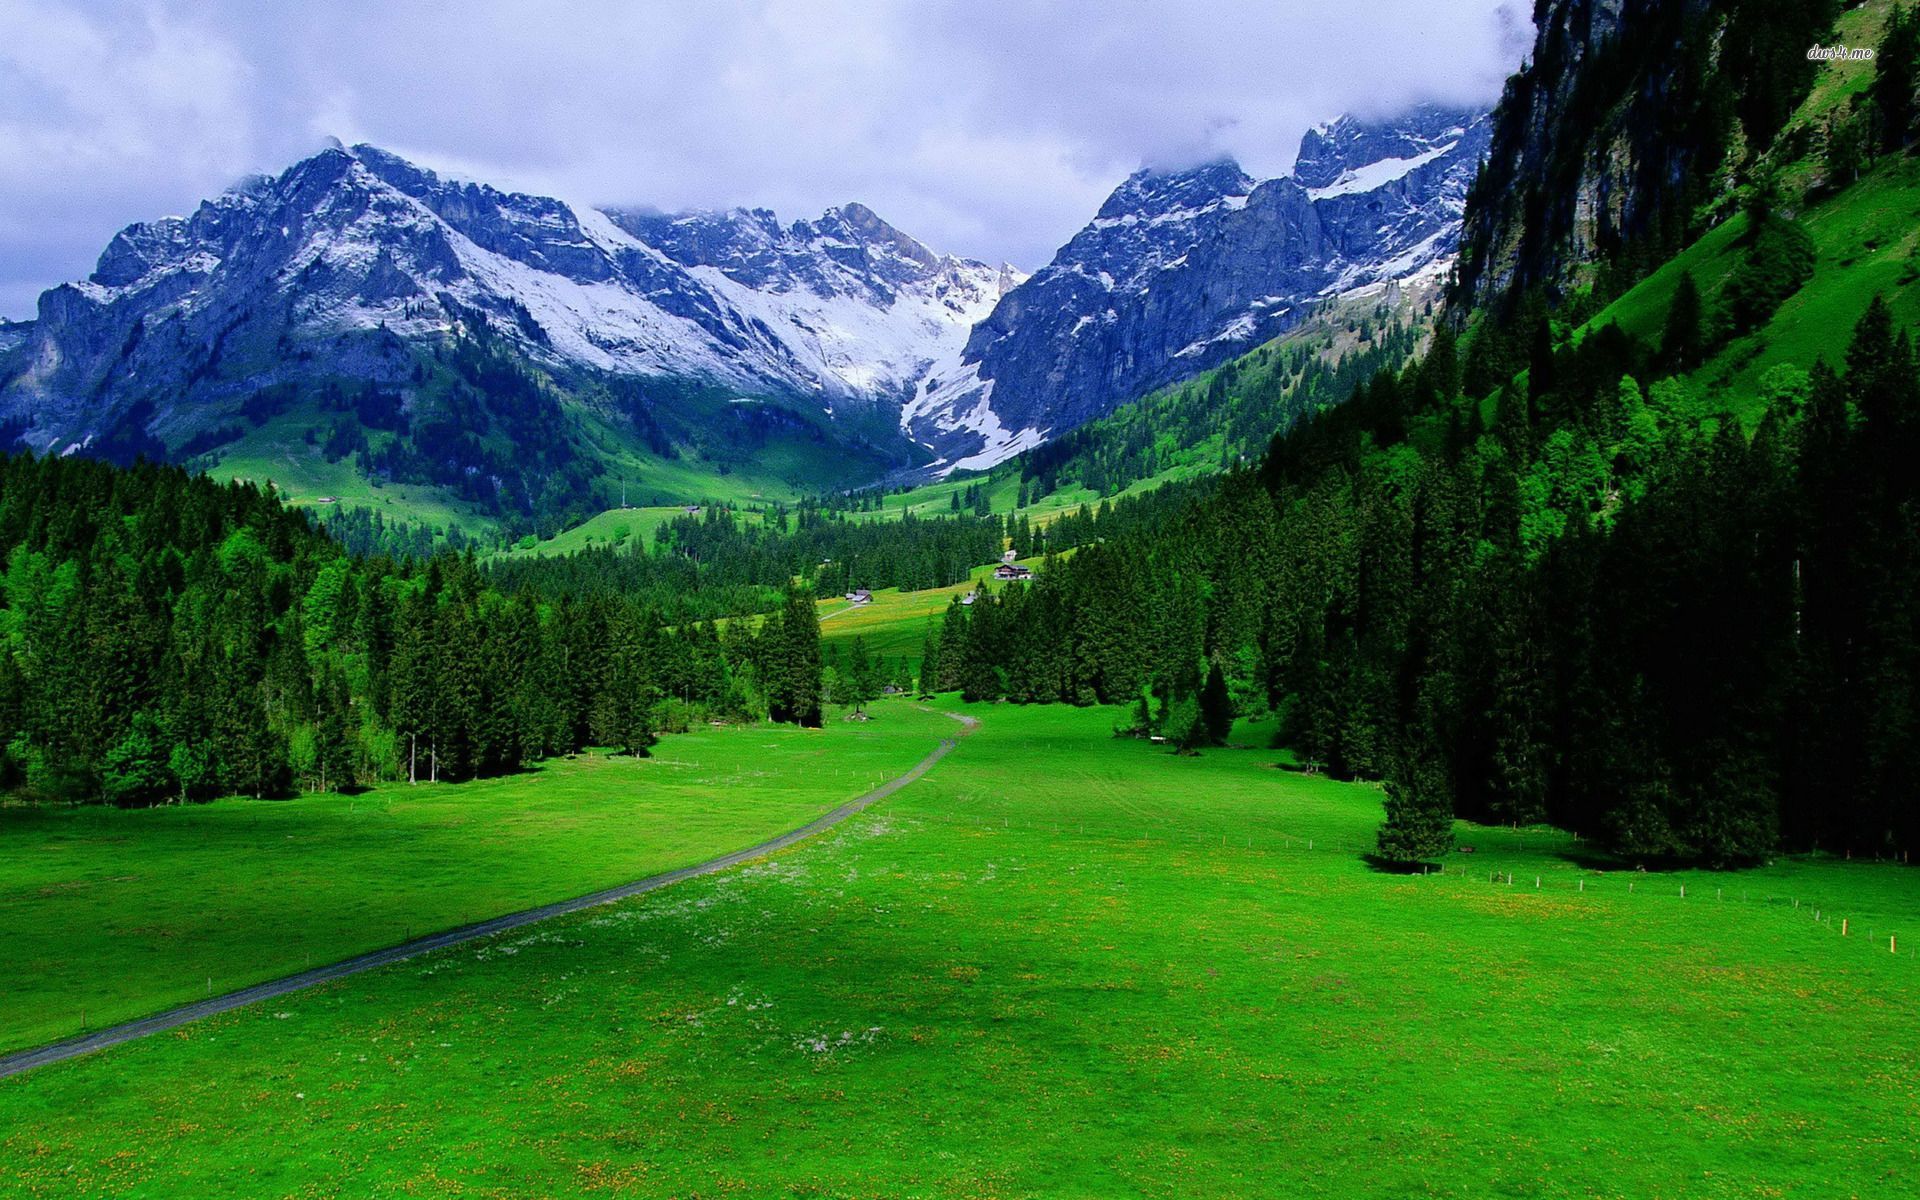 The Alps In Switzerland Nature Wallpaper. Nature wallpaper, Explore nature, Beautiful nature